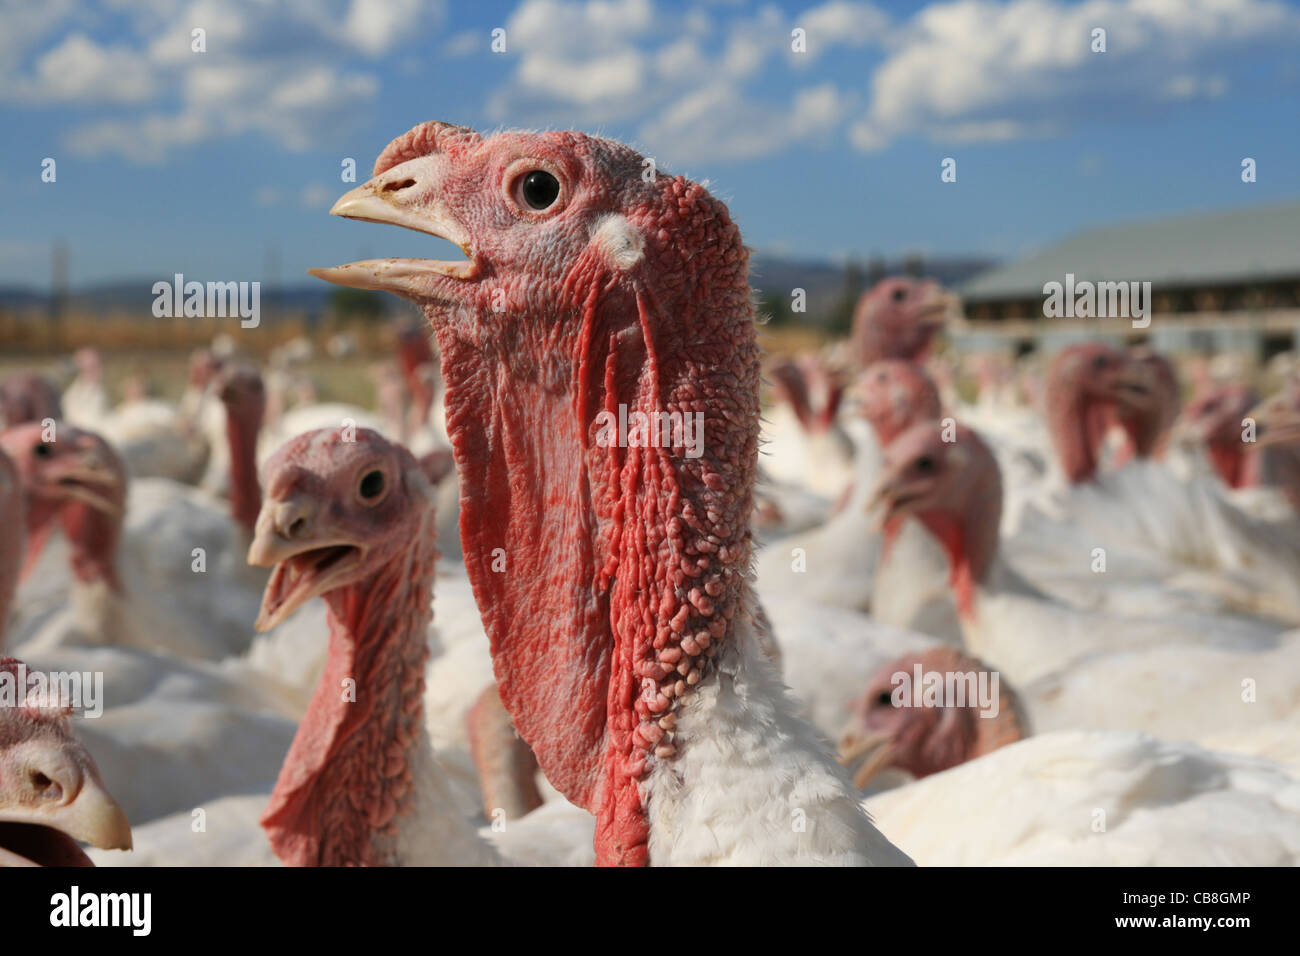 Basso angolo di visione della testa di turchia circondato da altri in una fattoria della Turchia Foto Stock